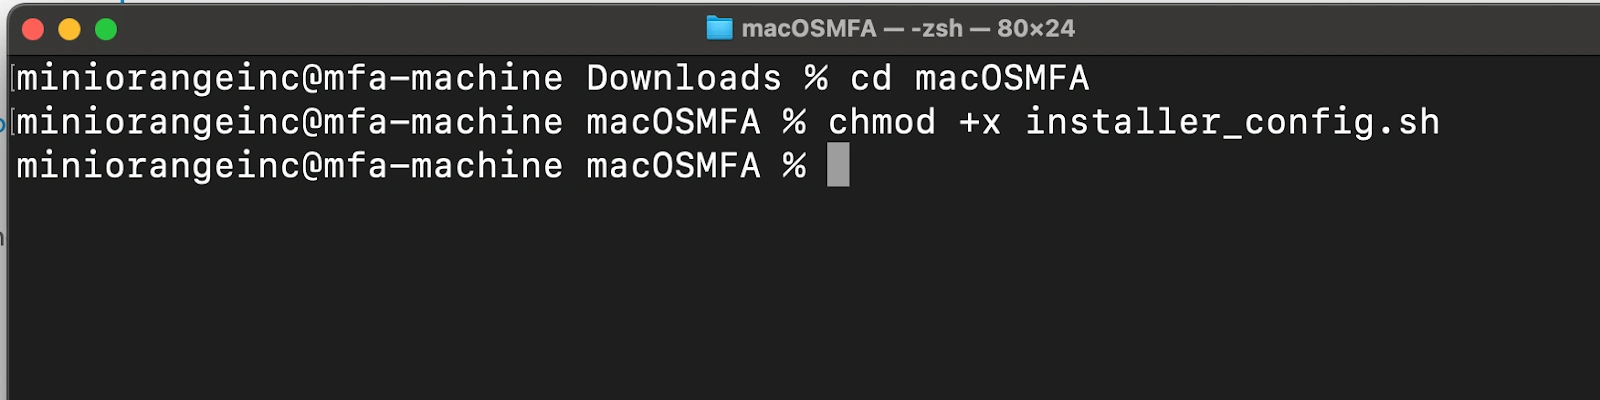 MacOS Multi-Factor Authentication 2FA/MFA